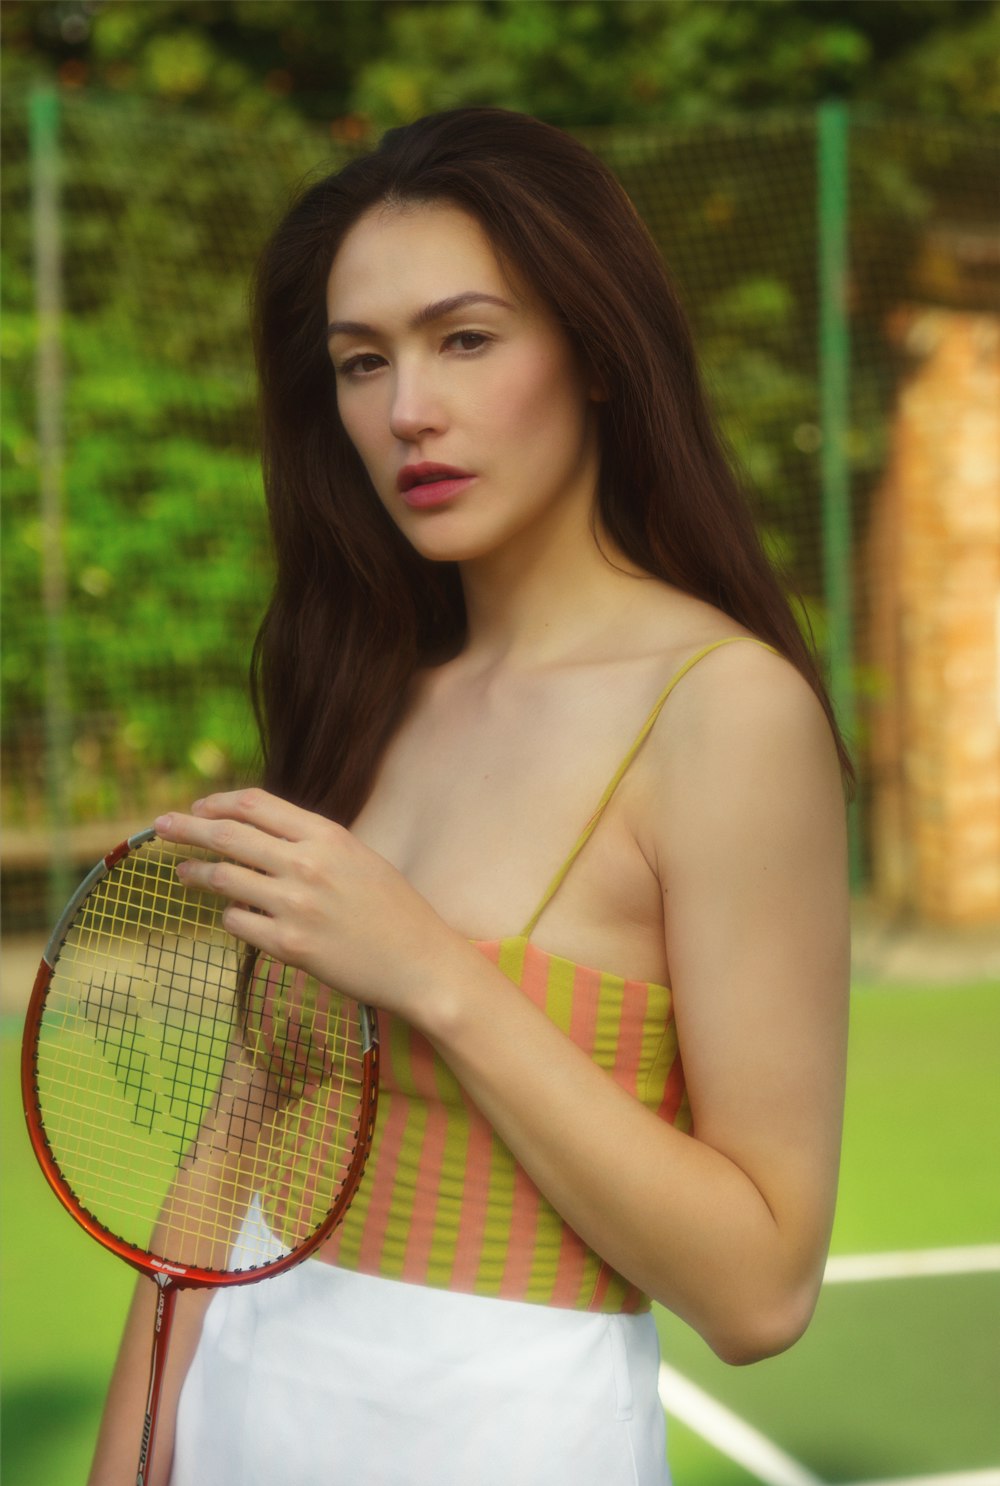 woman in yellow and green bikini top holding tennis racket